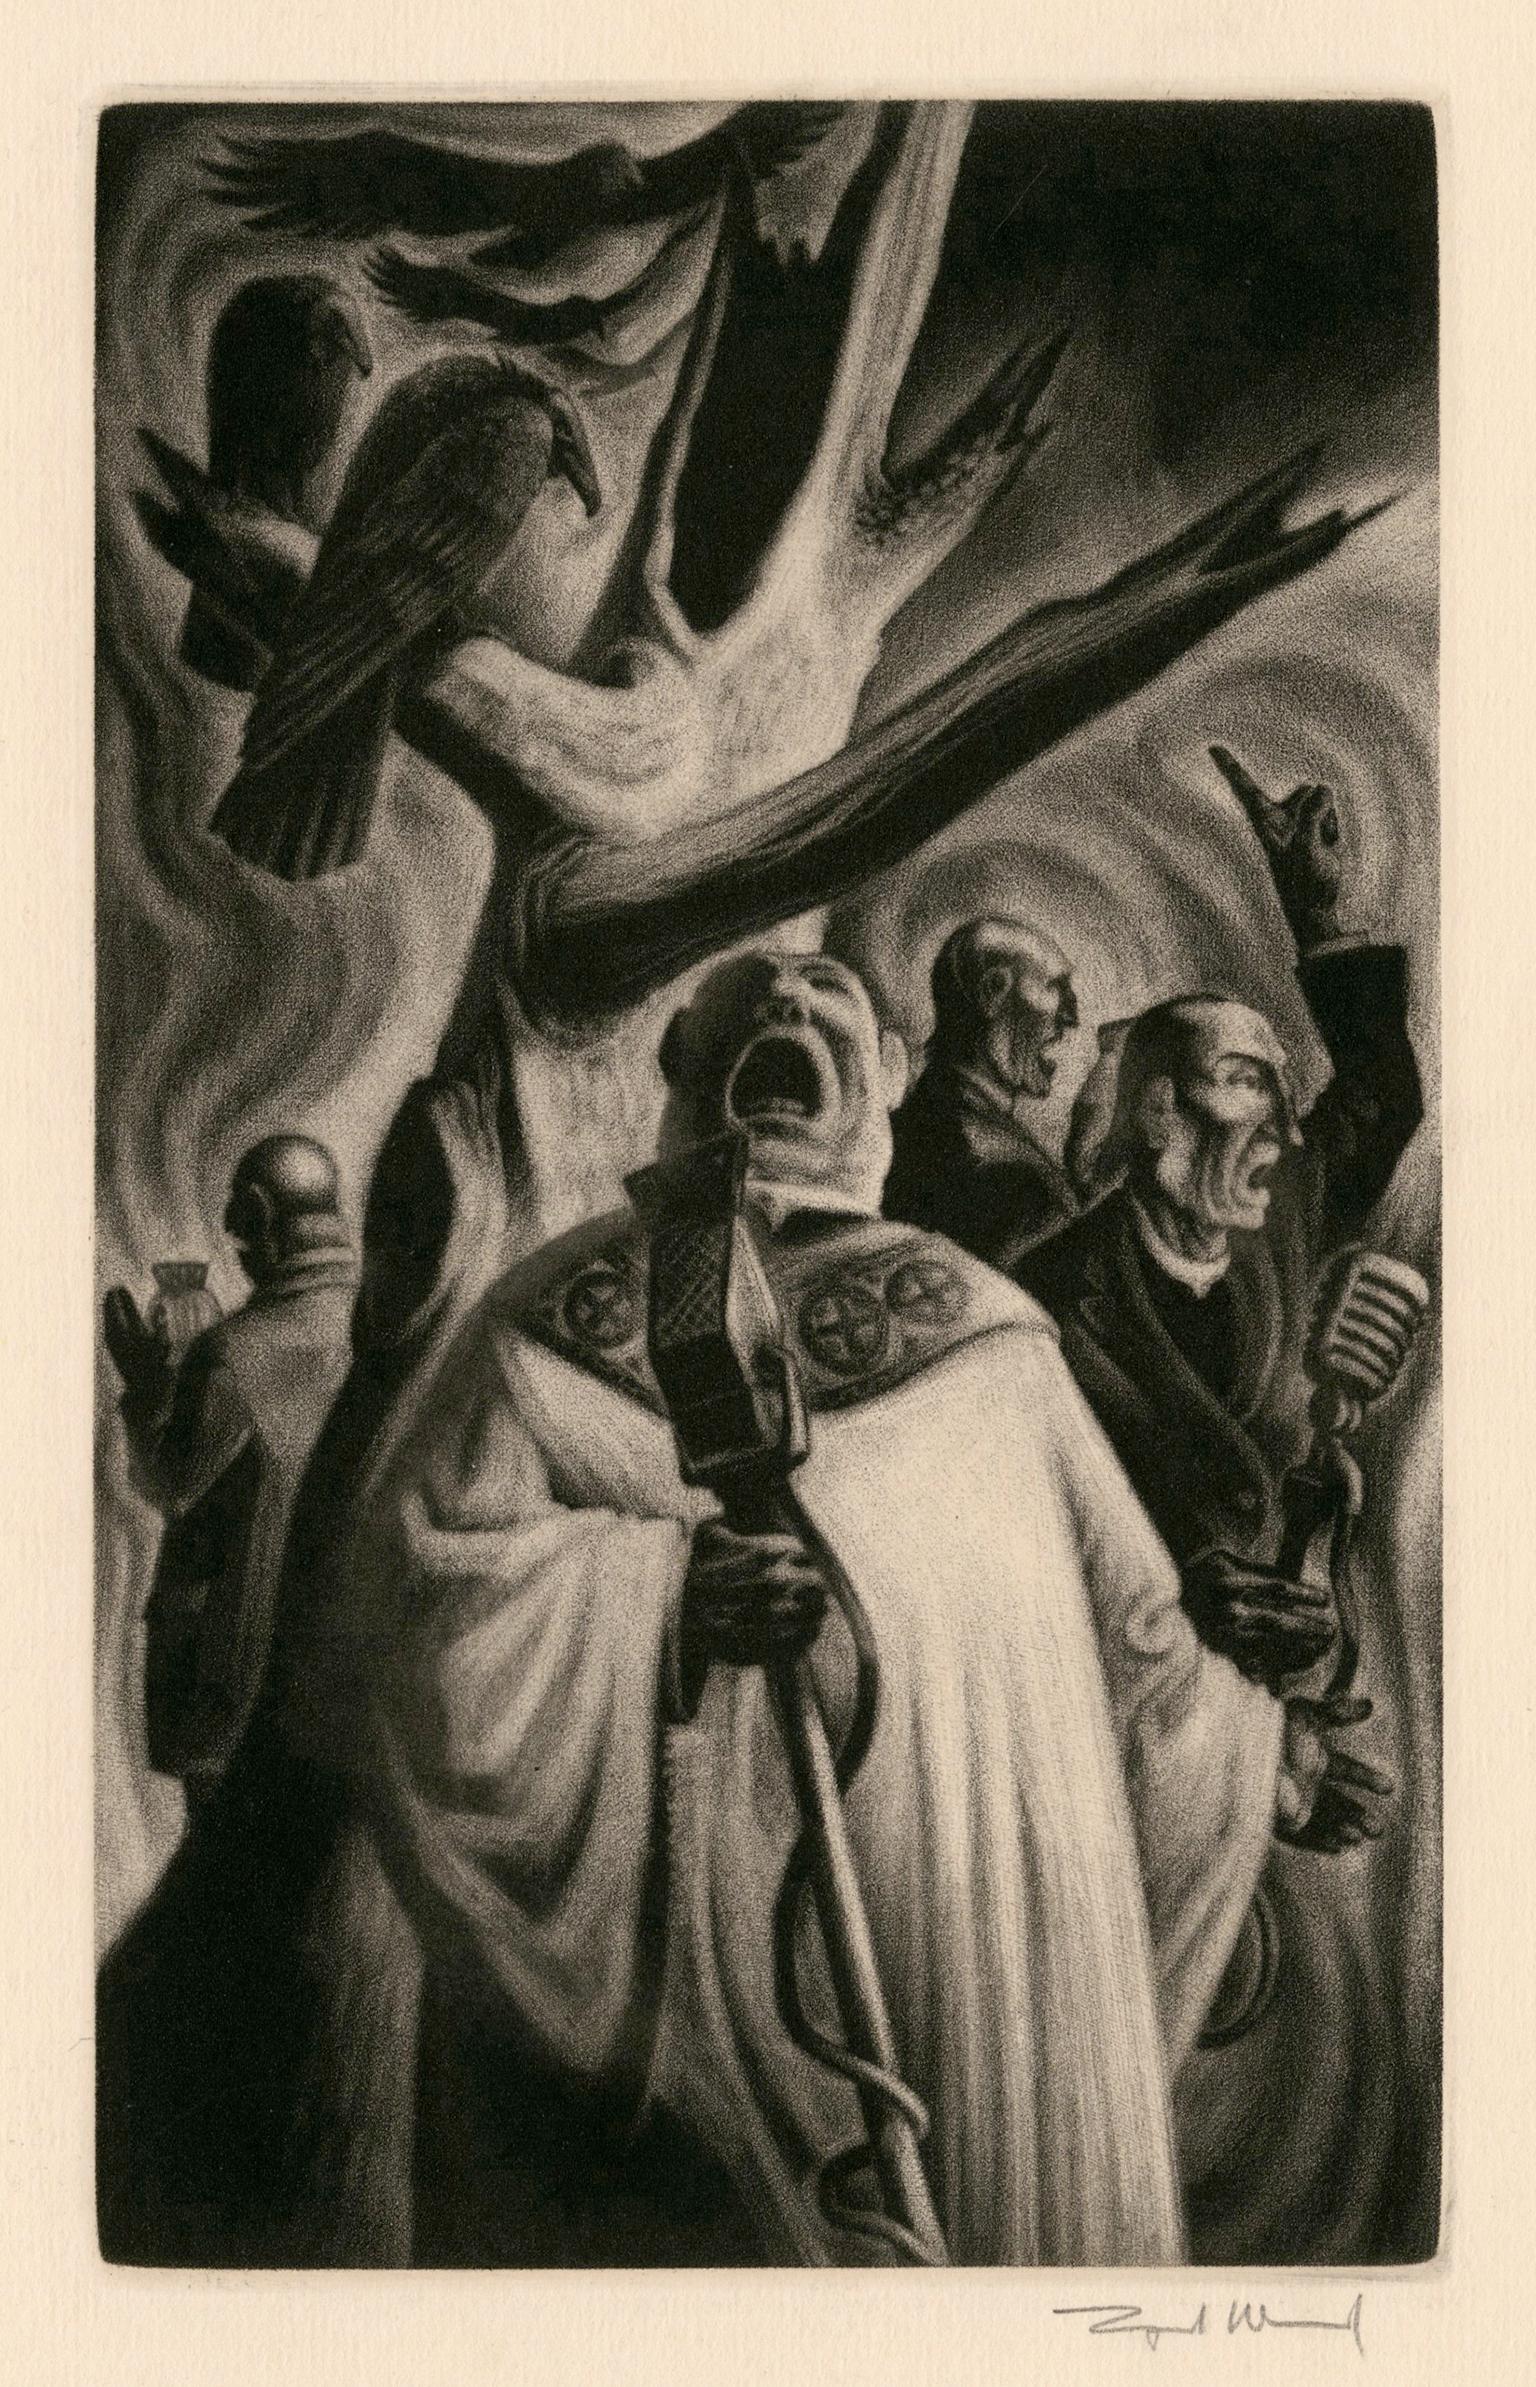 Prêtres" de "L'éloge de la folie" - Modernisme graphique des années 1940